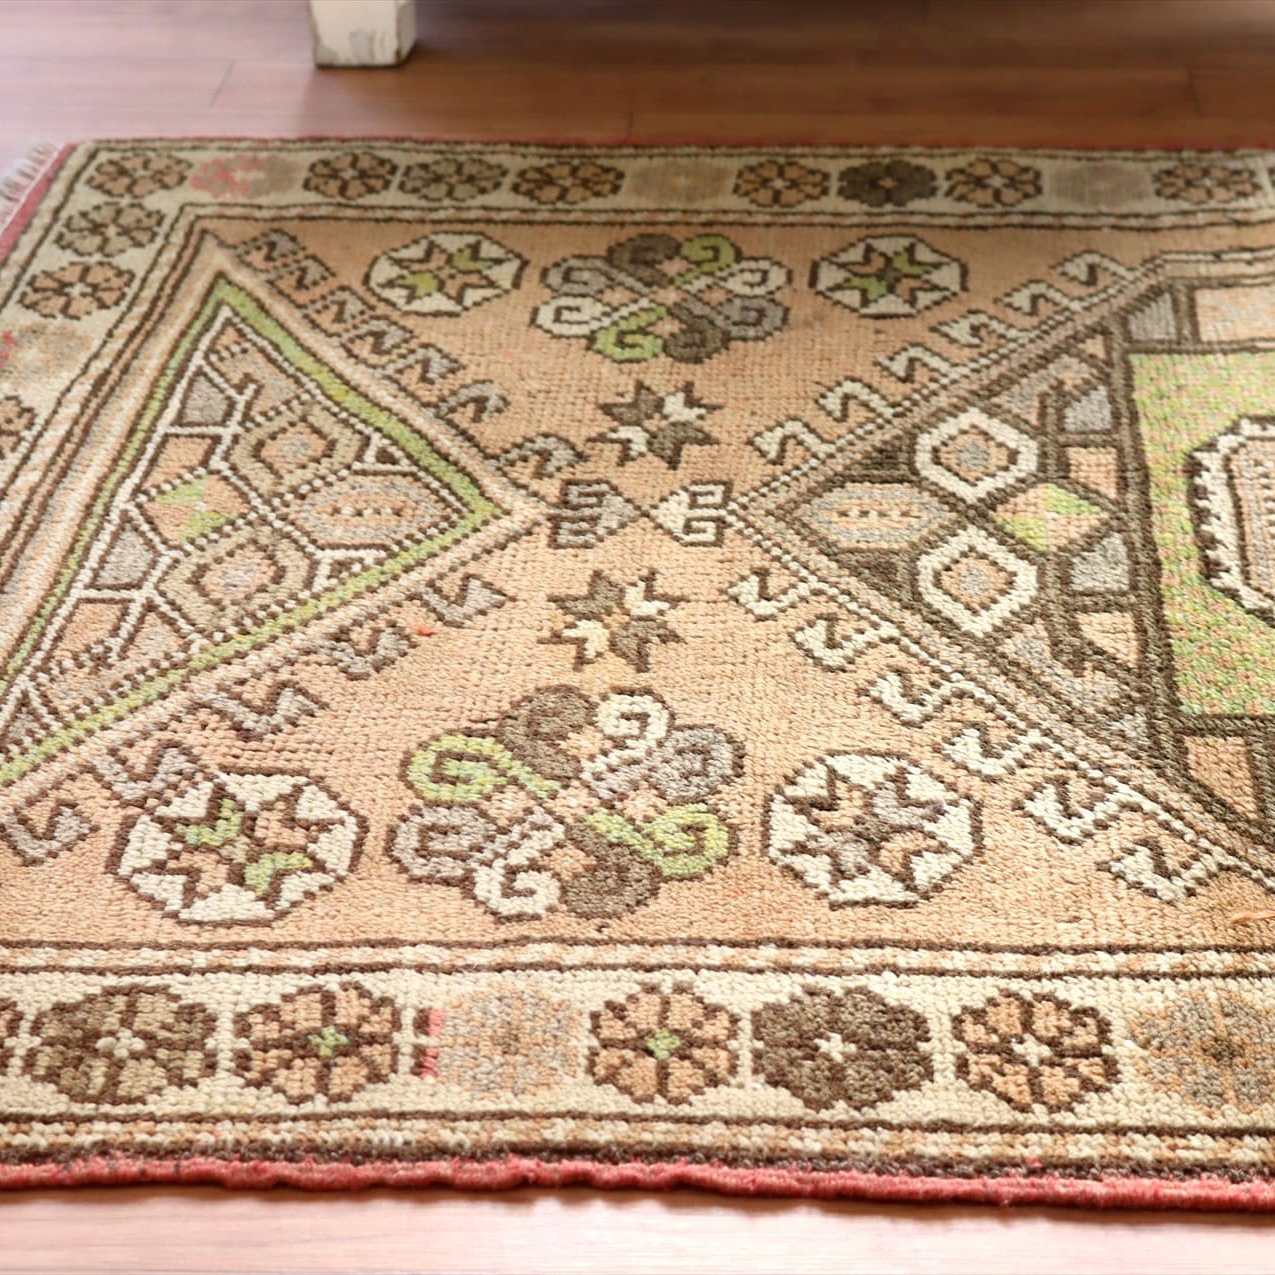 トルコ絨毯 オールドカーペット119×80cm 星のモチーフ